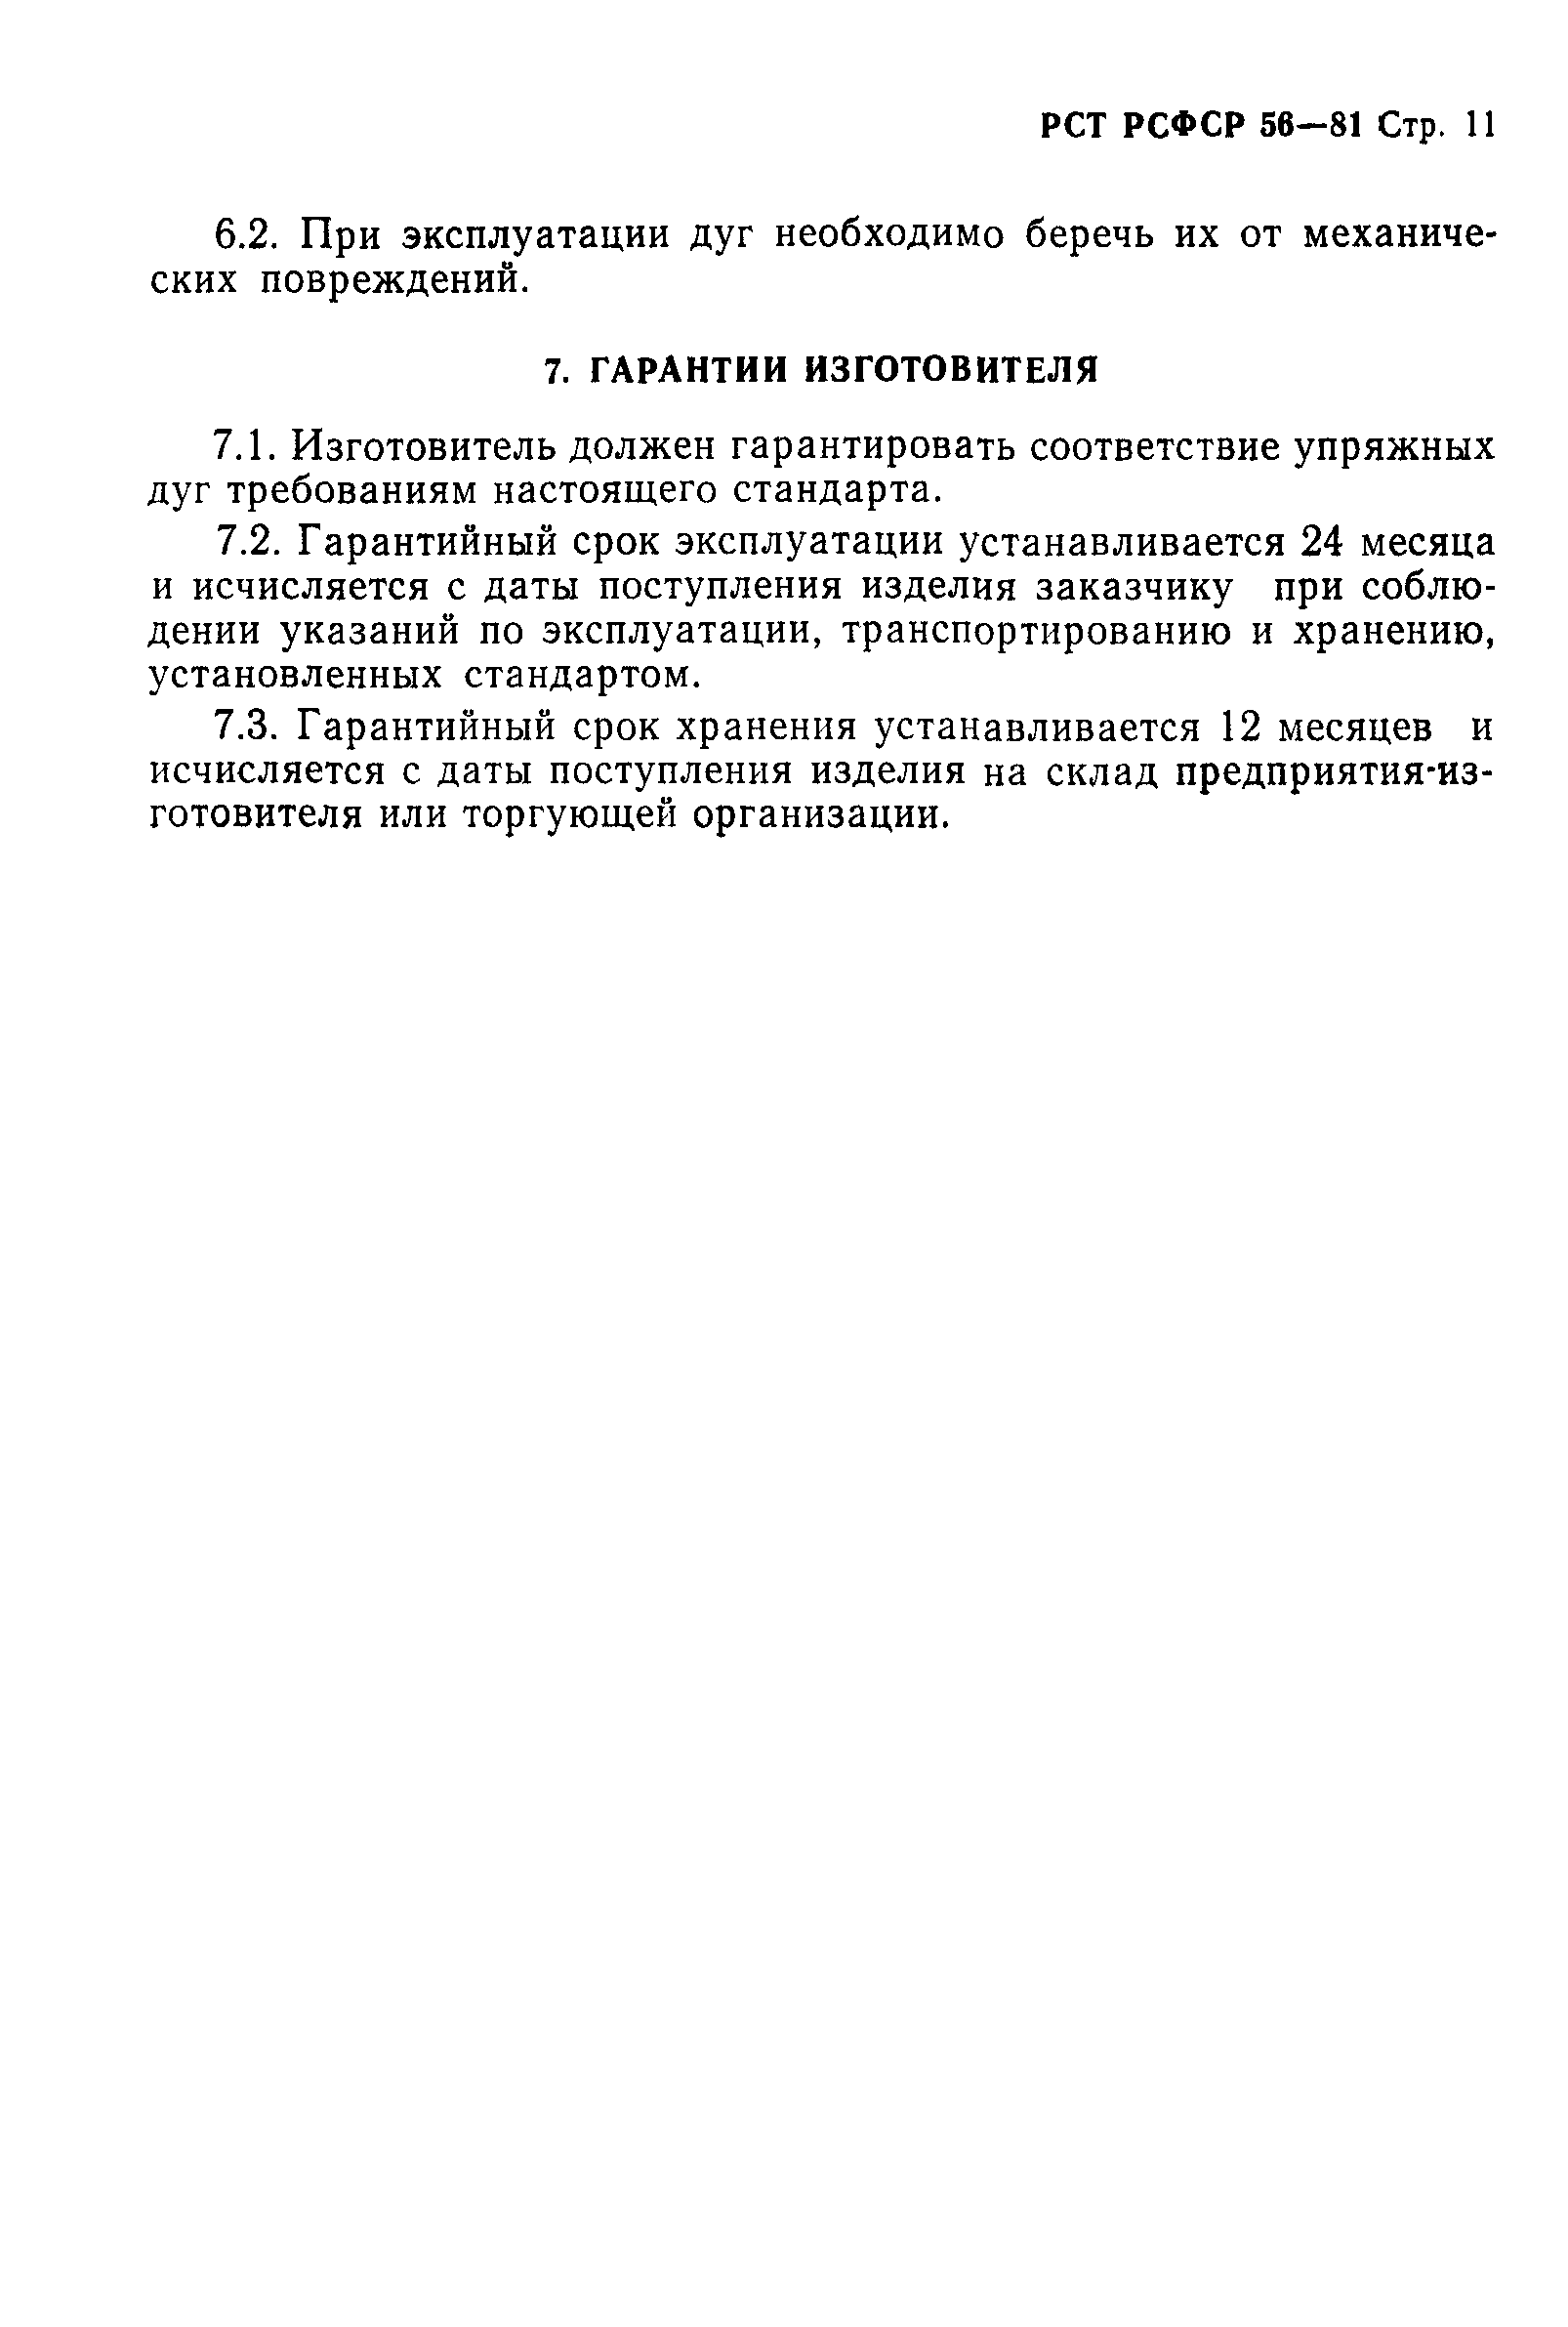 РСТ РСФСР 56-81